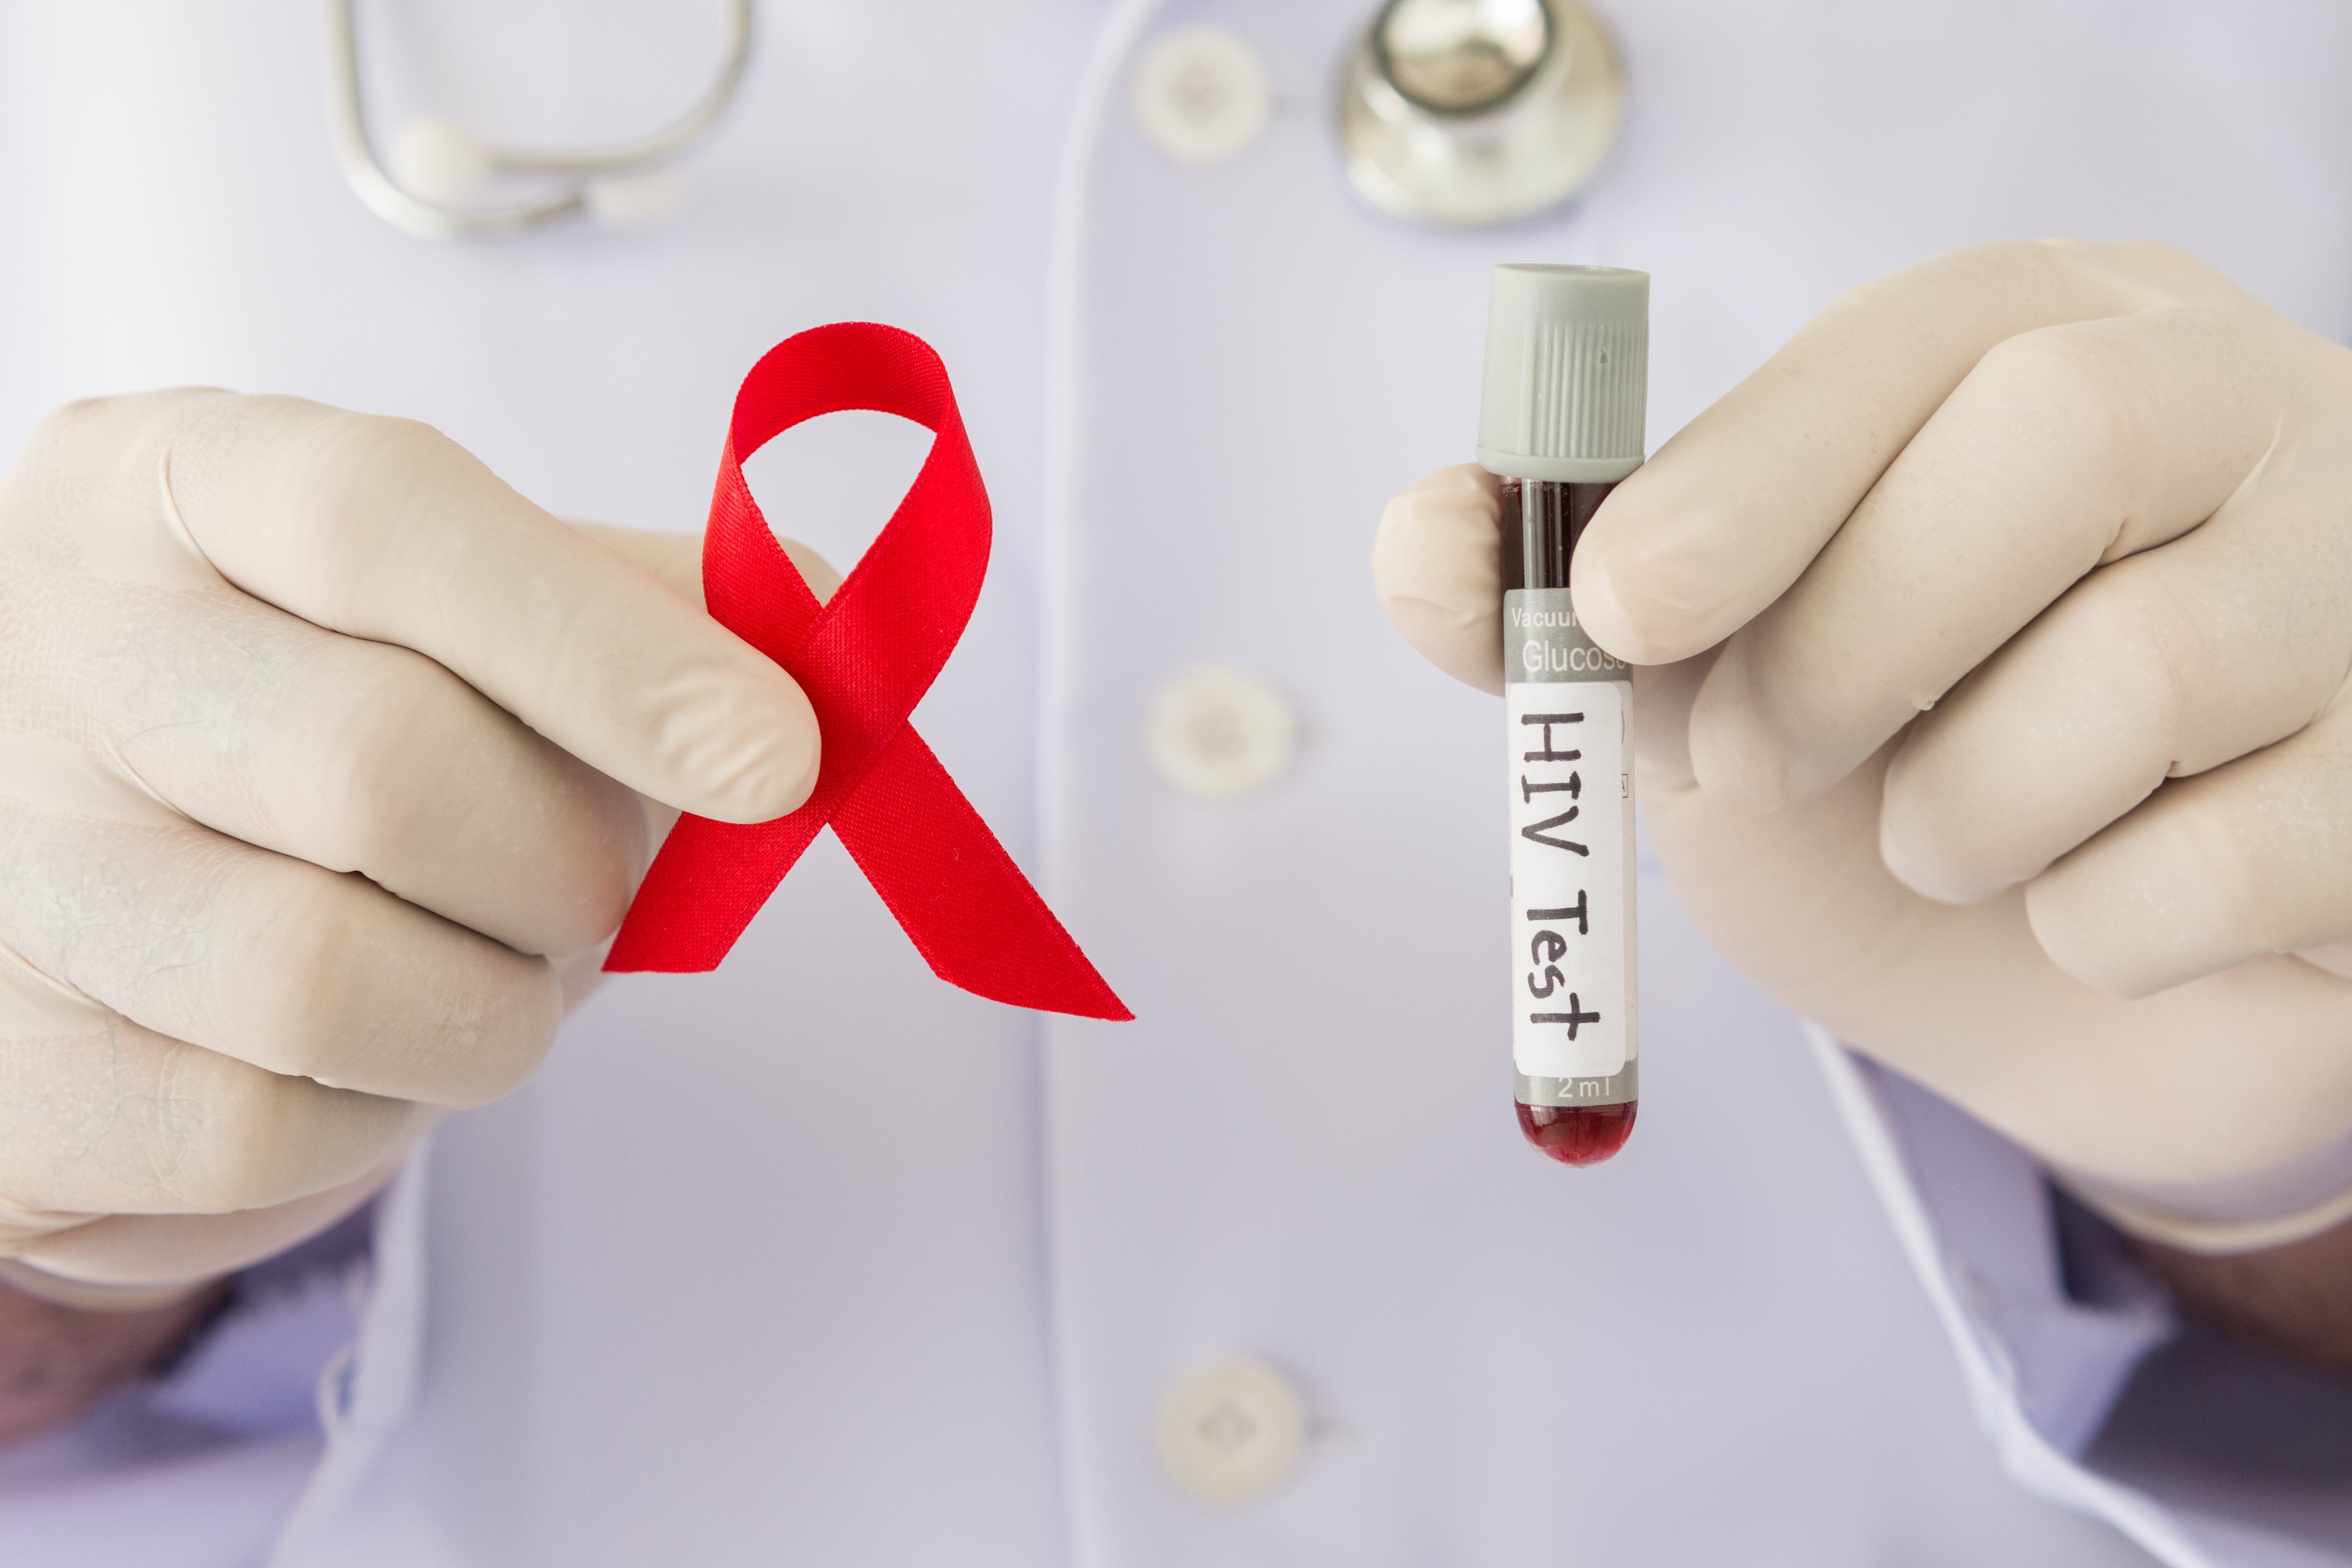 Todas las personas, al iniciar su actividad sexual, deben hacerse regularmente la prueba de VIH, especialmente si pertenecen al grupo de población en riesgo. (Foto Prensa Libre: Shutterstock)